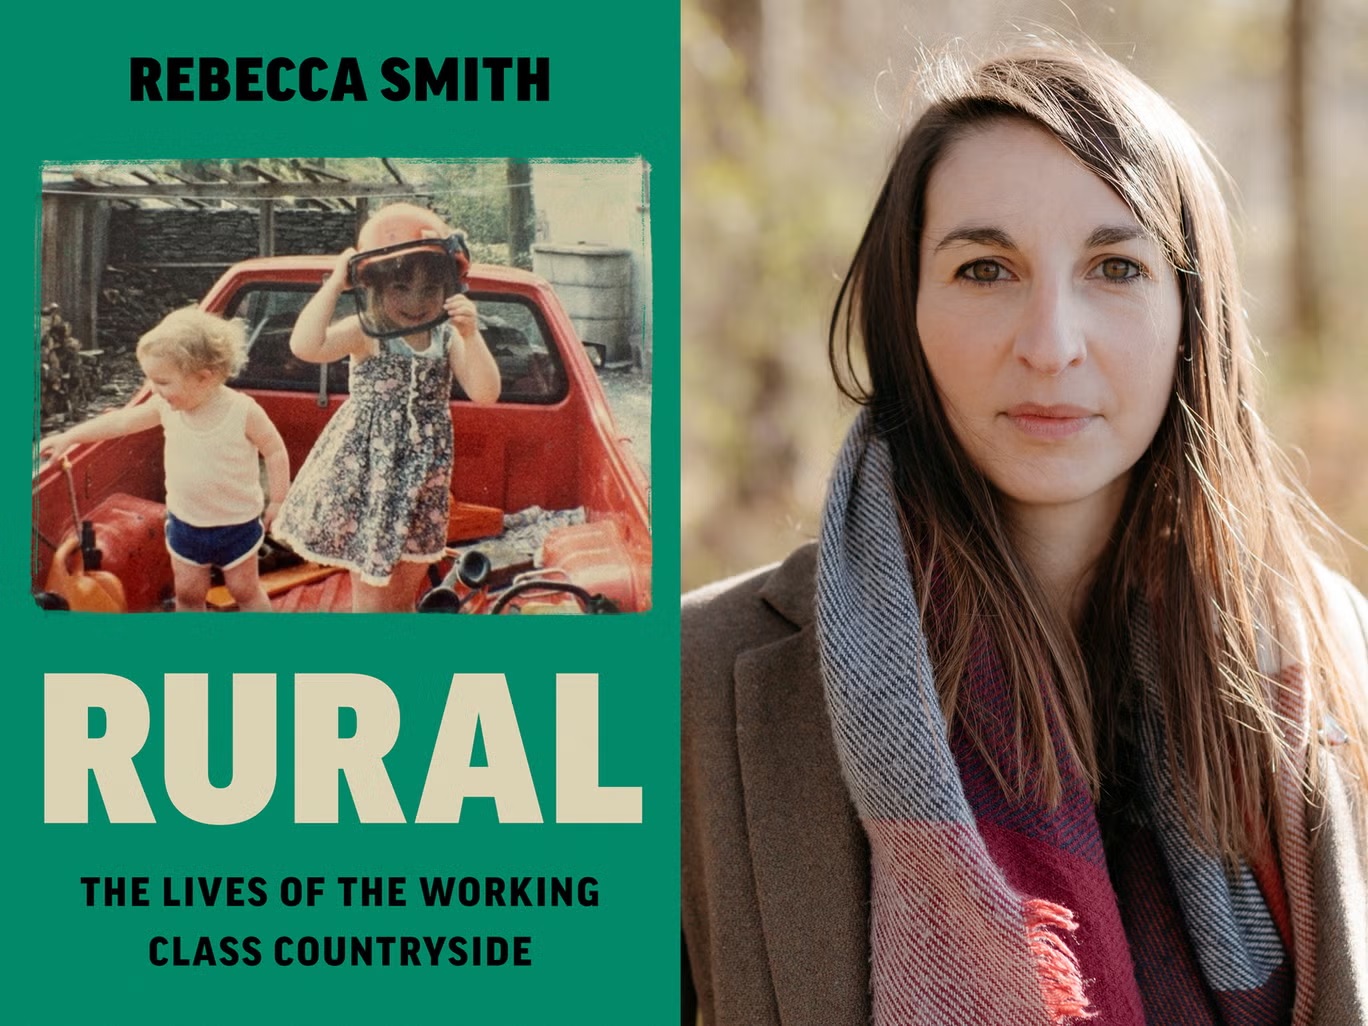  كتاب "ريفي" لريبيكا سميث استكشاف ذكي ومتعدد الأوجه لحياة الطبقة العاملة في الريف البريطاني (اندبندنت)